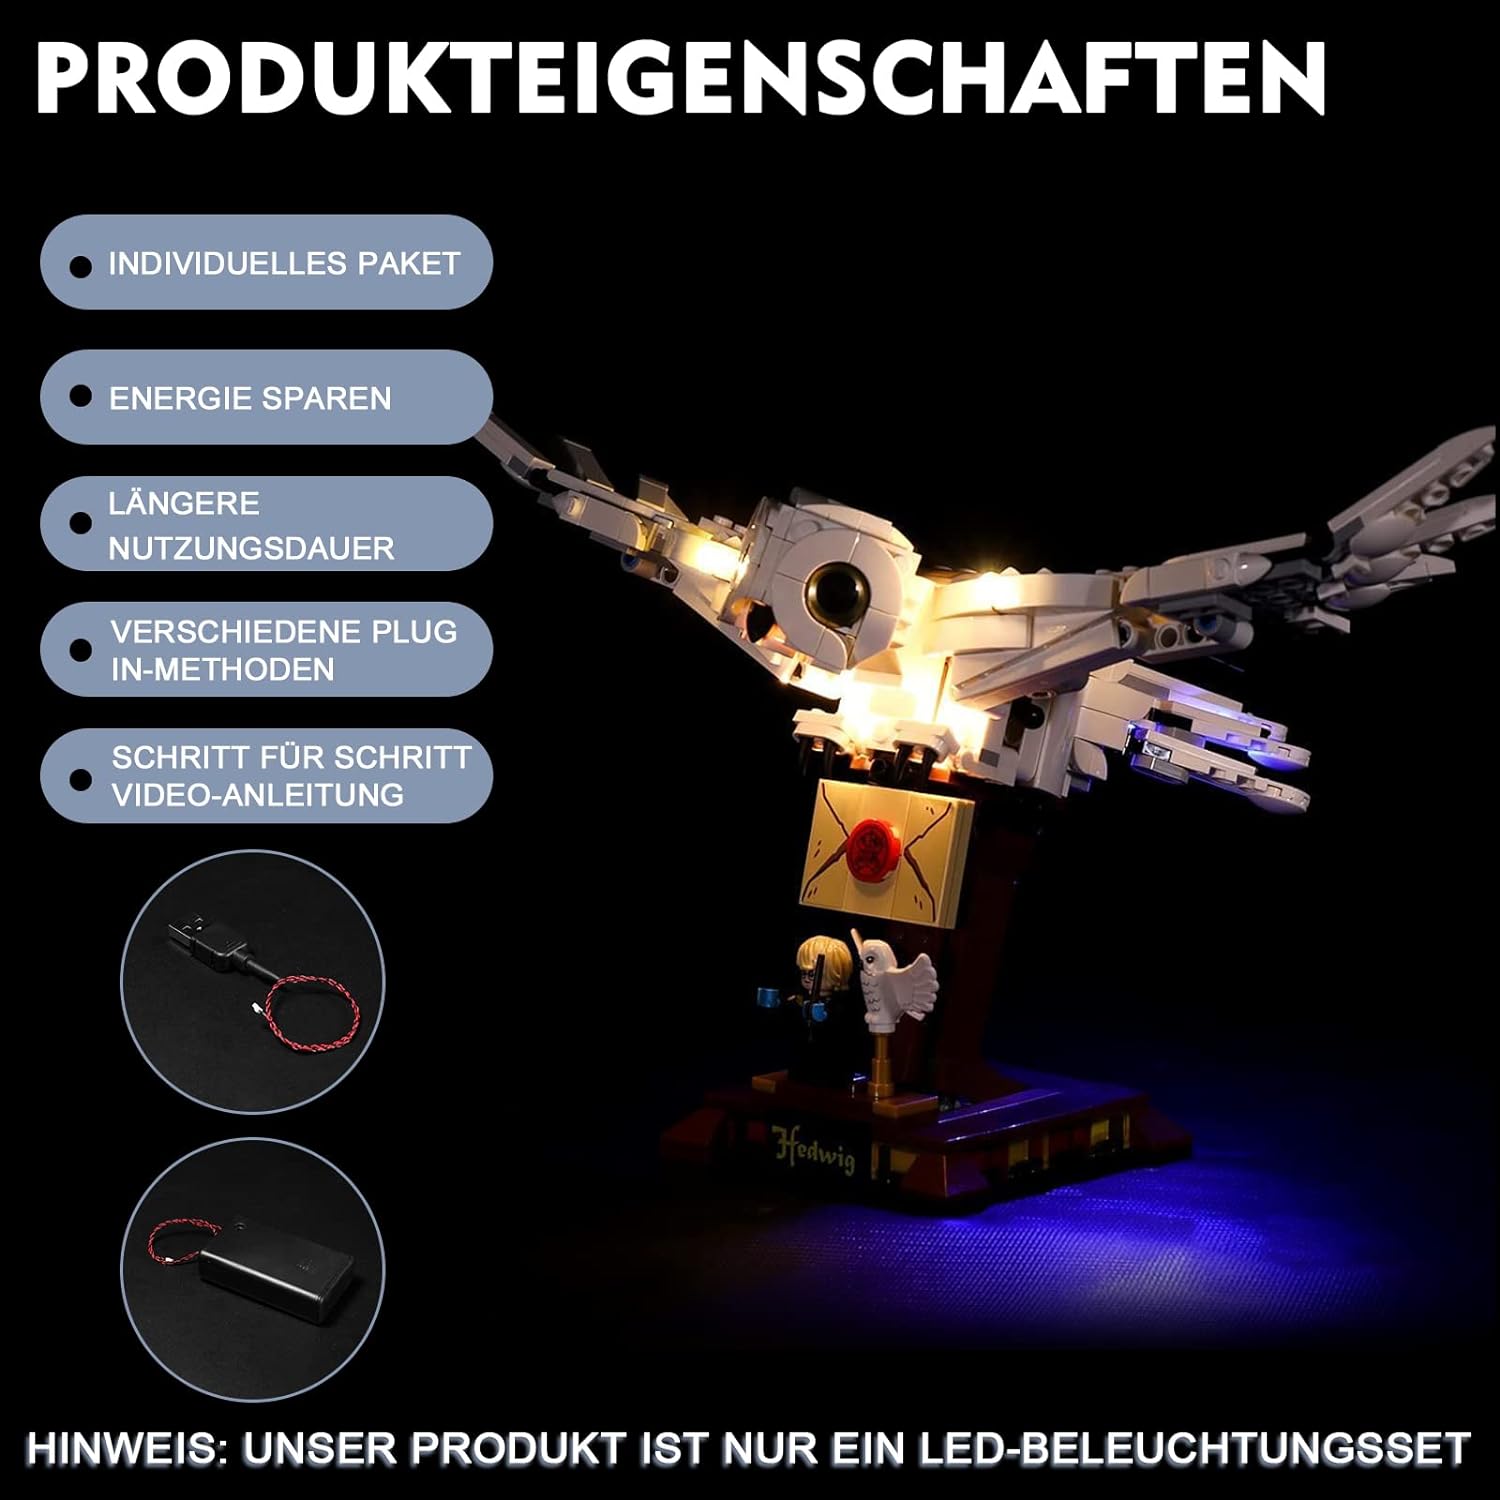 BrickBling Light Kit for LEGO Harry Potter Hedwig 75979